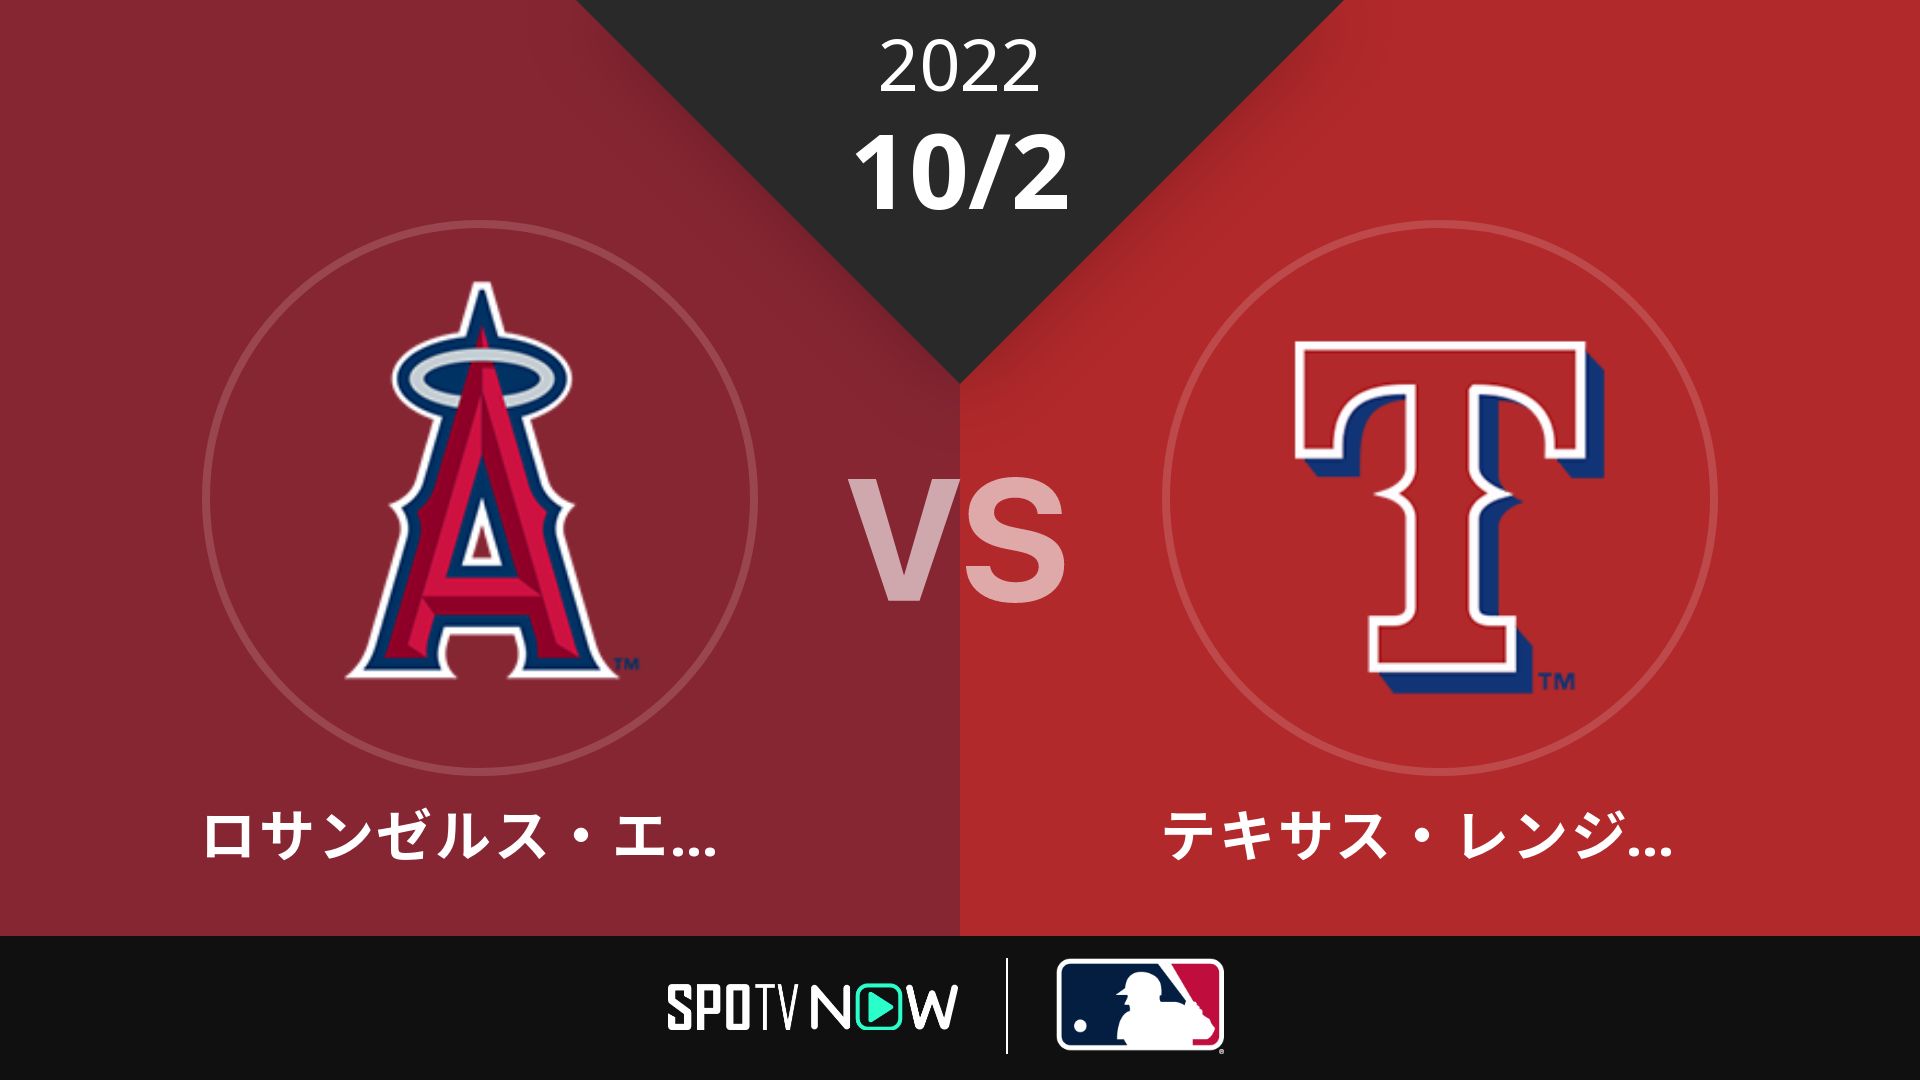 2022/10/2 エンゼルス vs レンジャーズ [MLB]